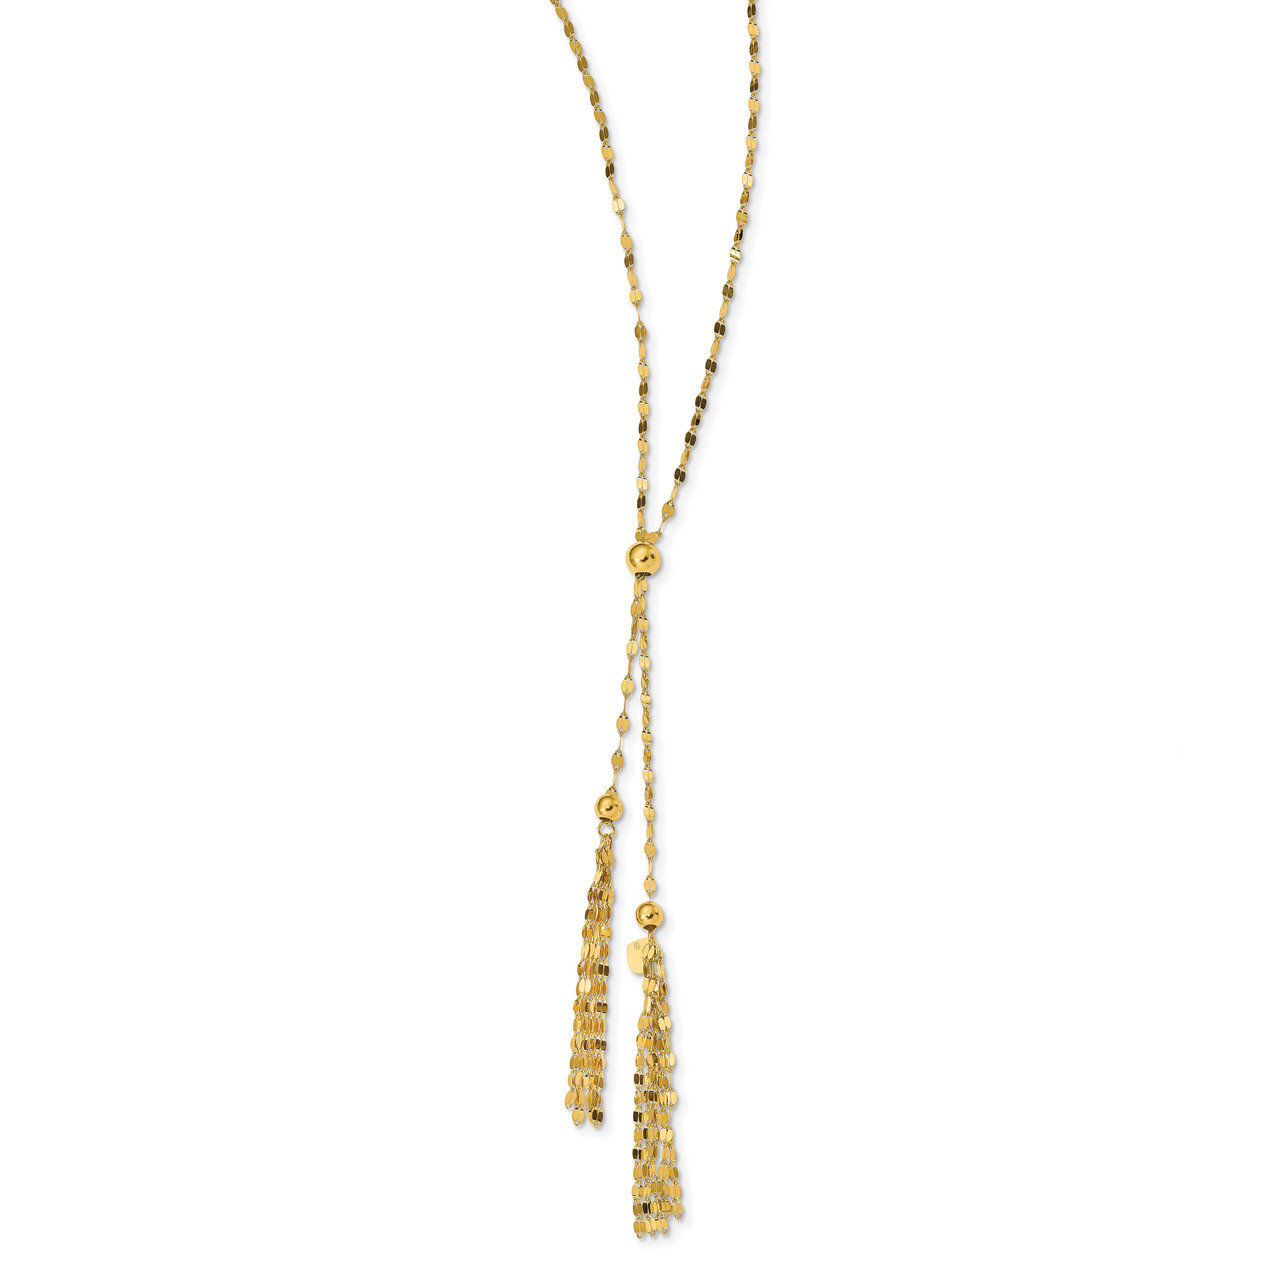 Tassle Adjustable Necklace 14k Gold Polished HB-LF1117